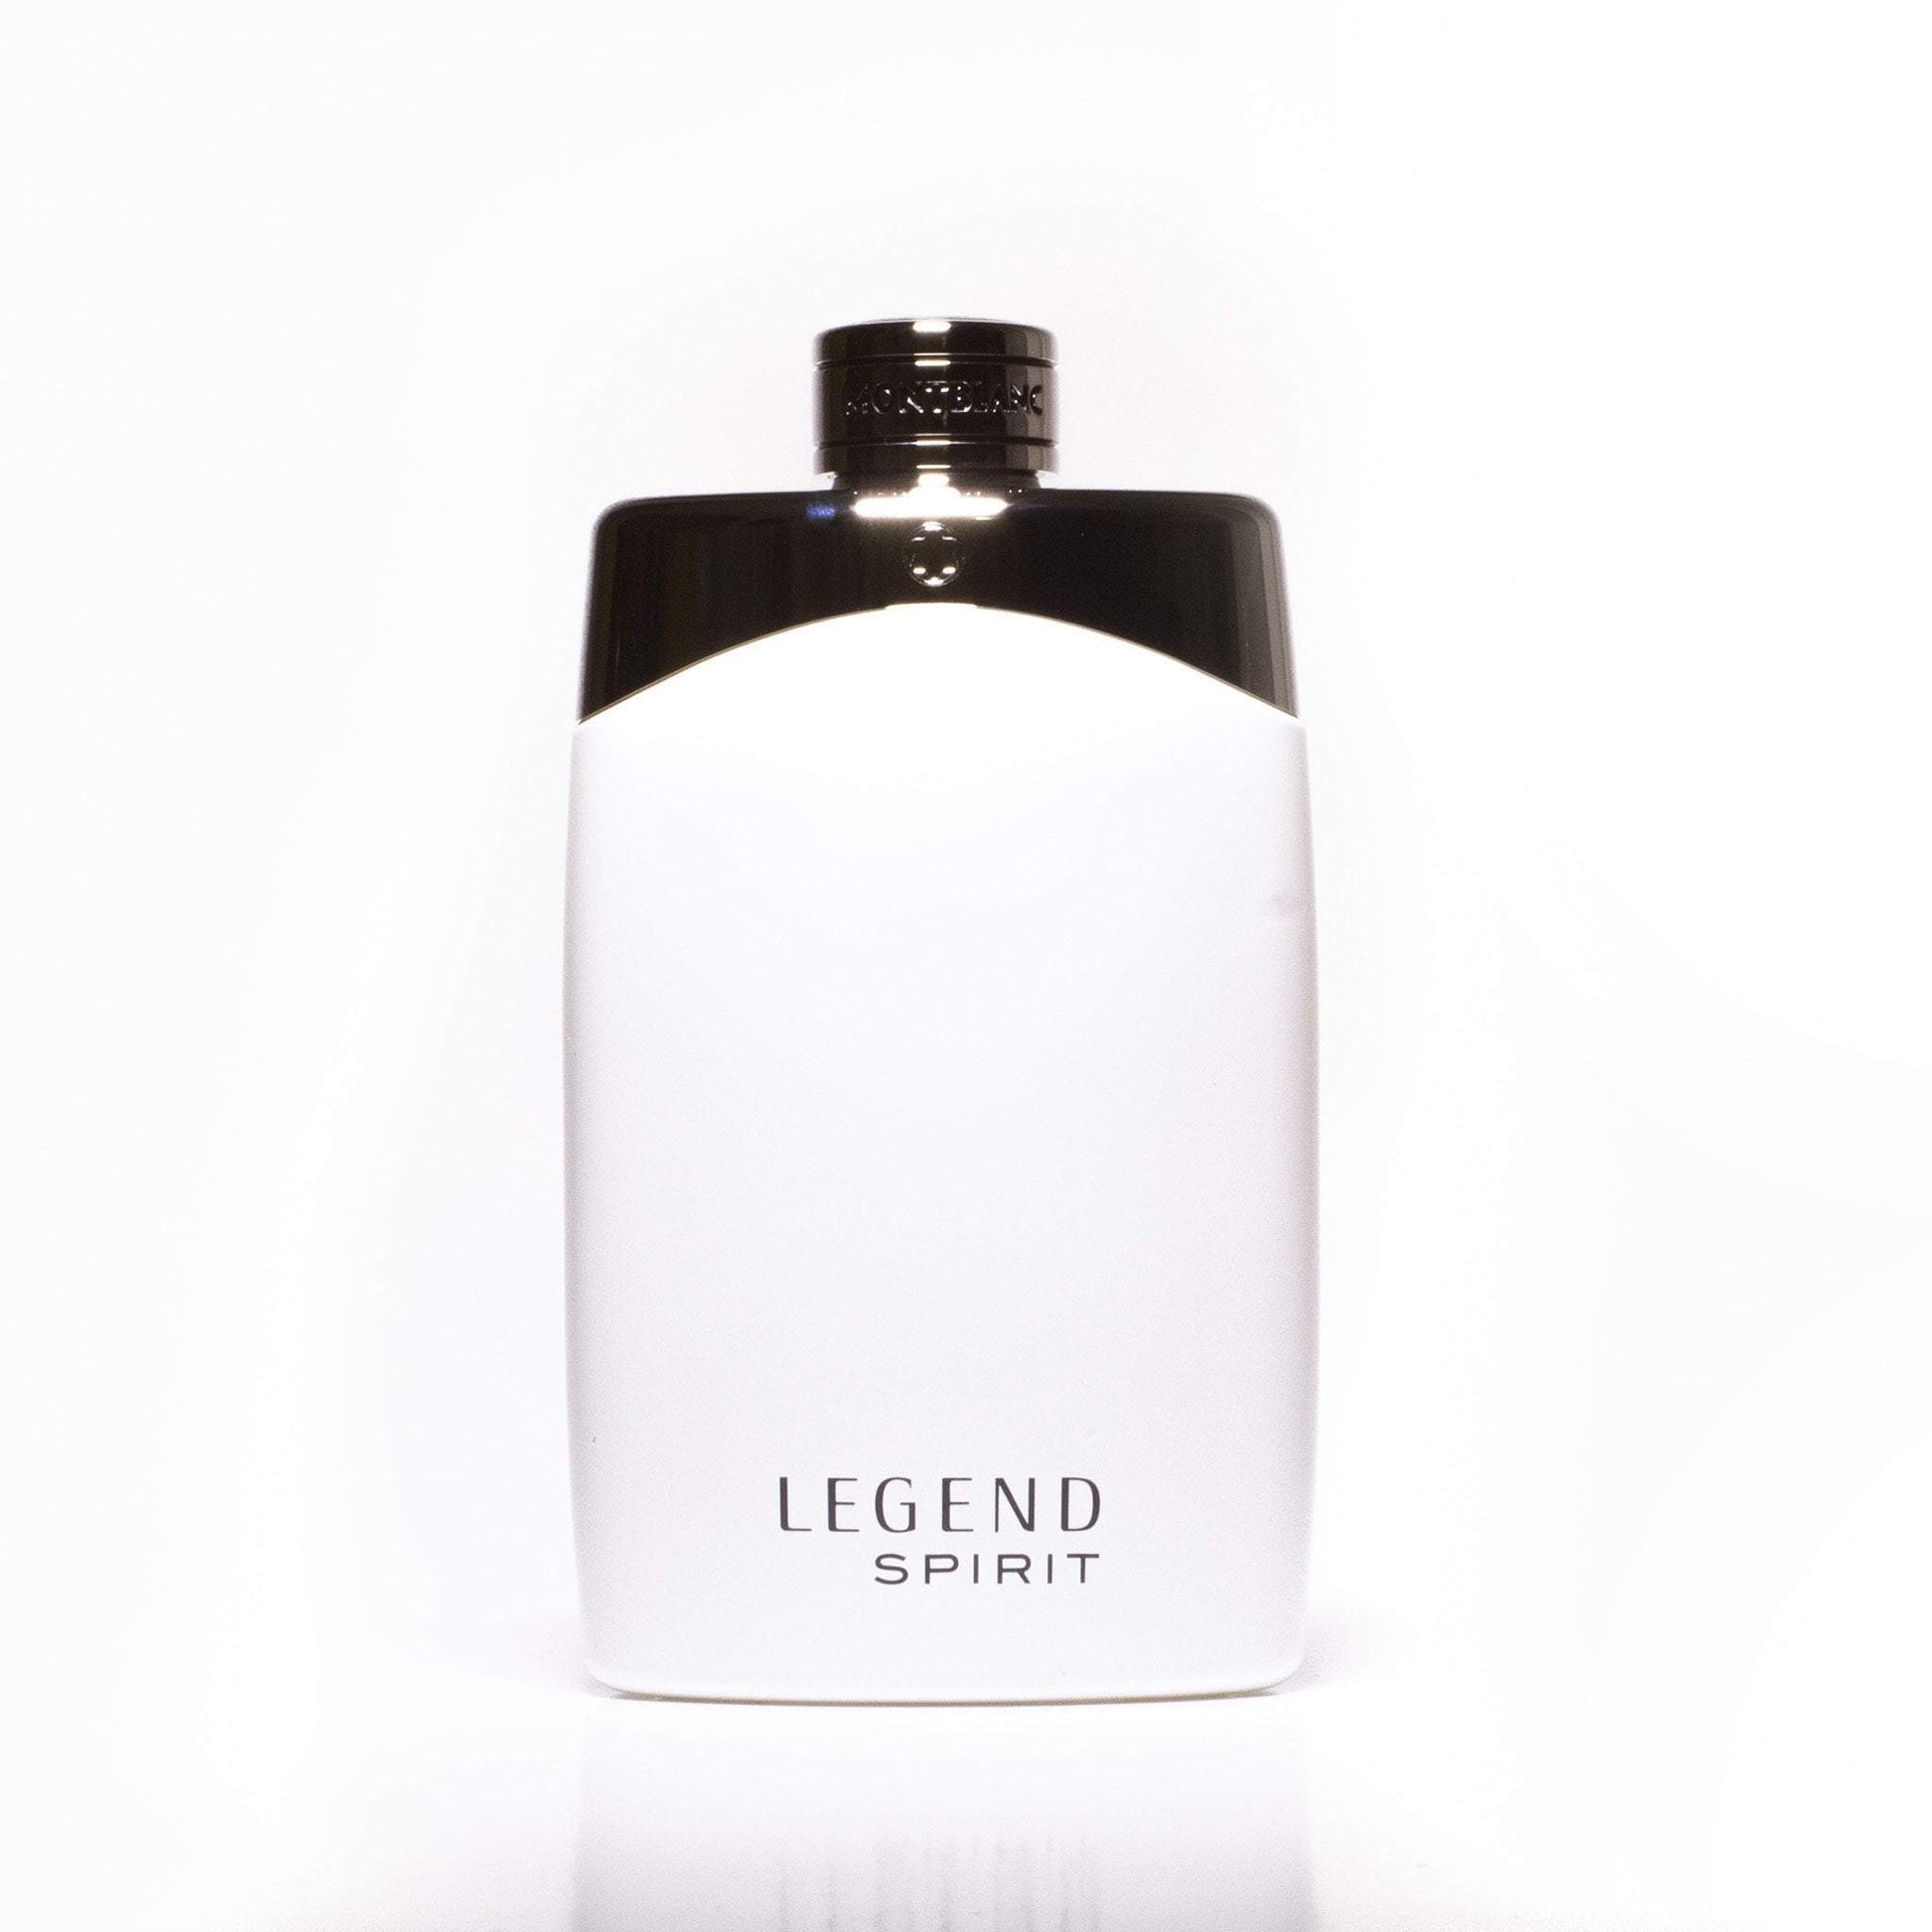 Legend Spirit Eau de Toilette Spray for Men by Montblanc, Product image 6